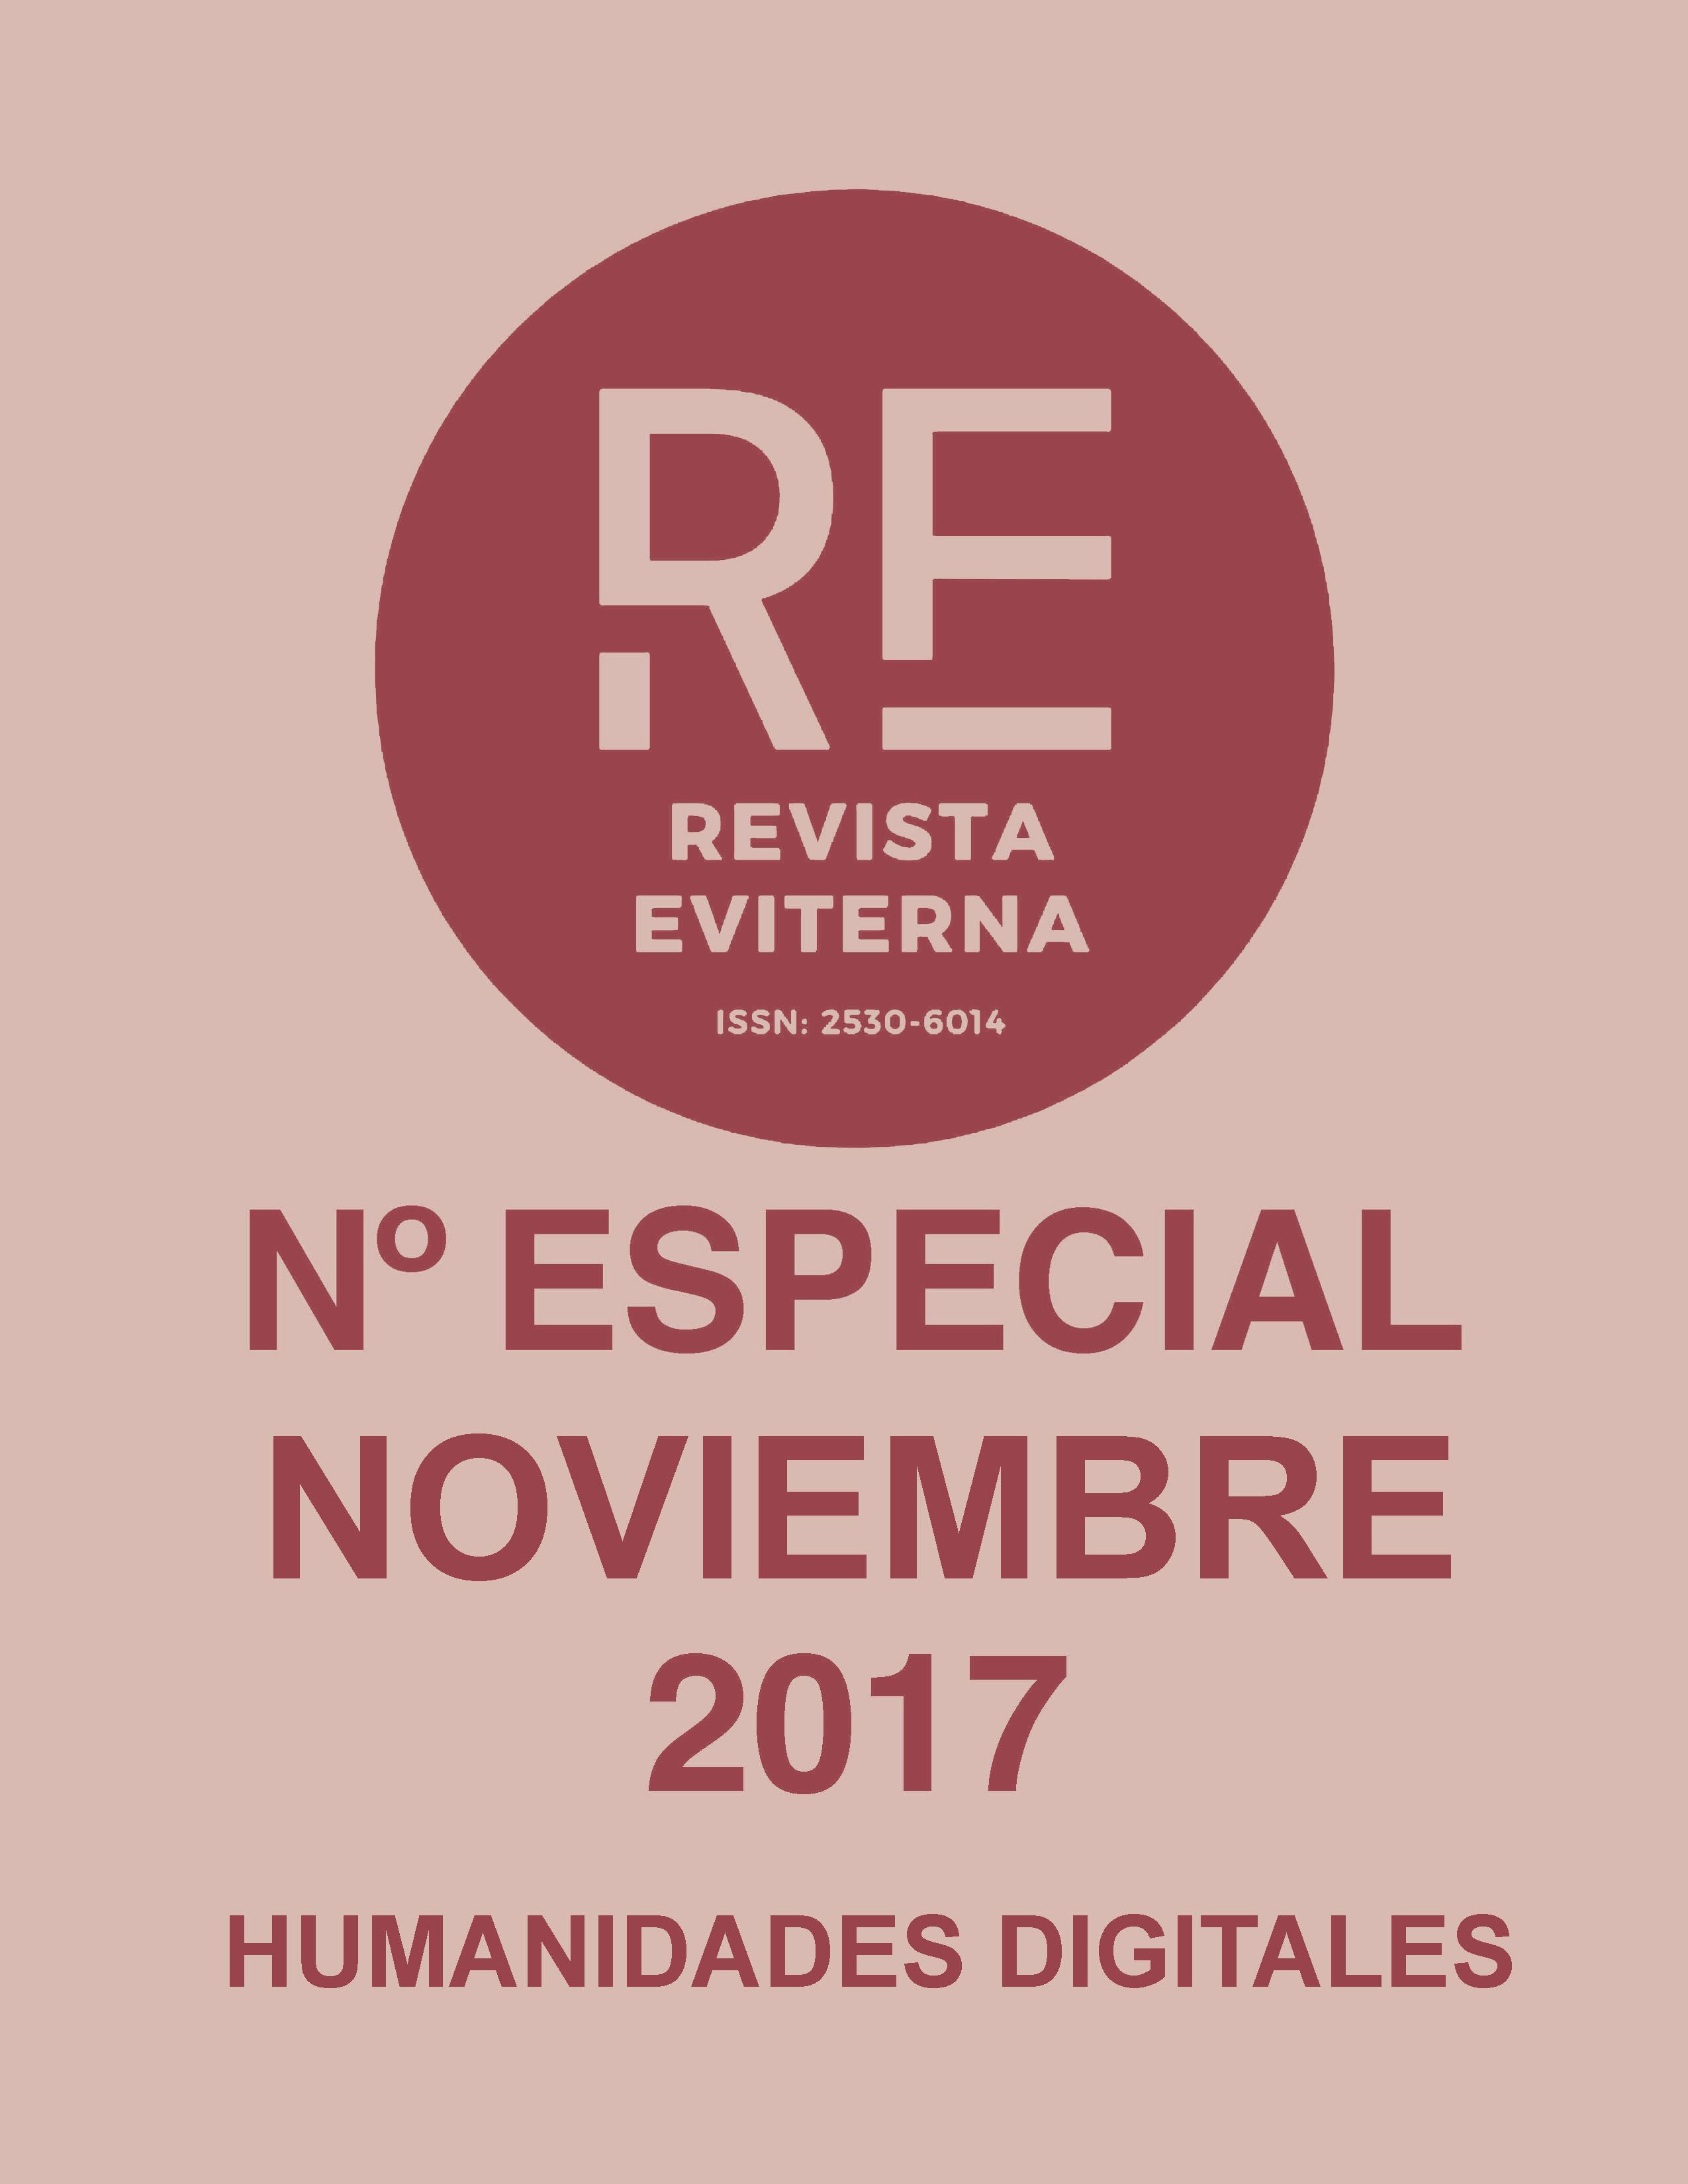 					Ver Núm. Especial 2 (2017): Revista Eviterna Nº Especial 2, noviembre 2017
				